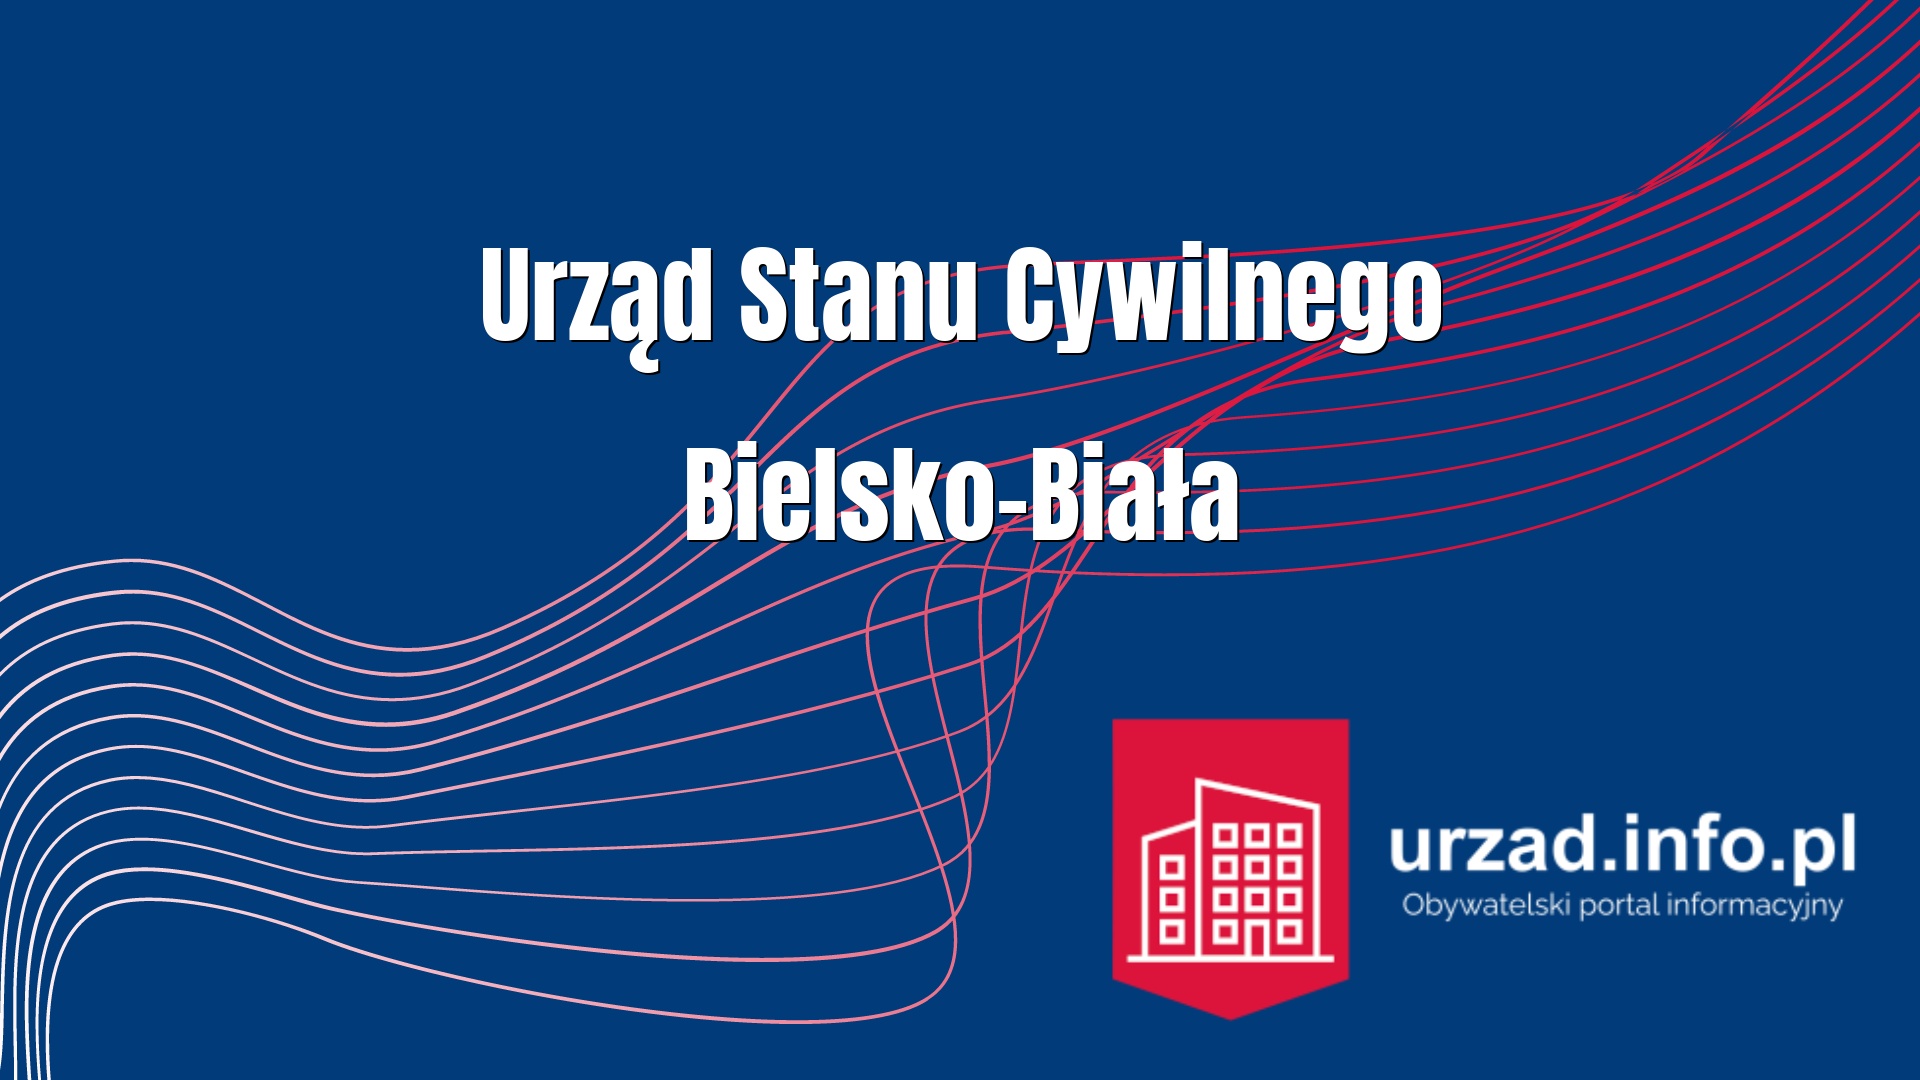 Urząd Stanu Cywilnego Bielsko-Biała